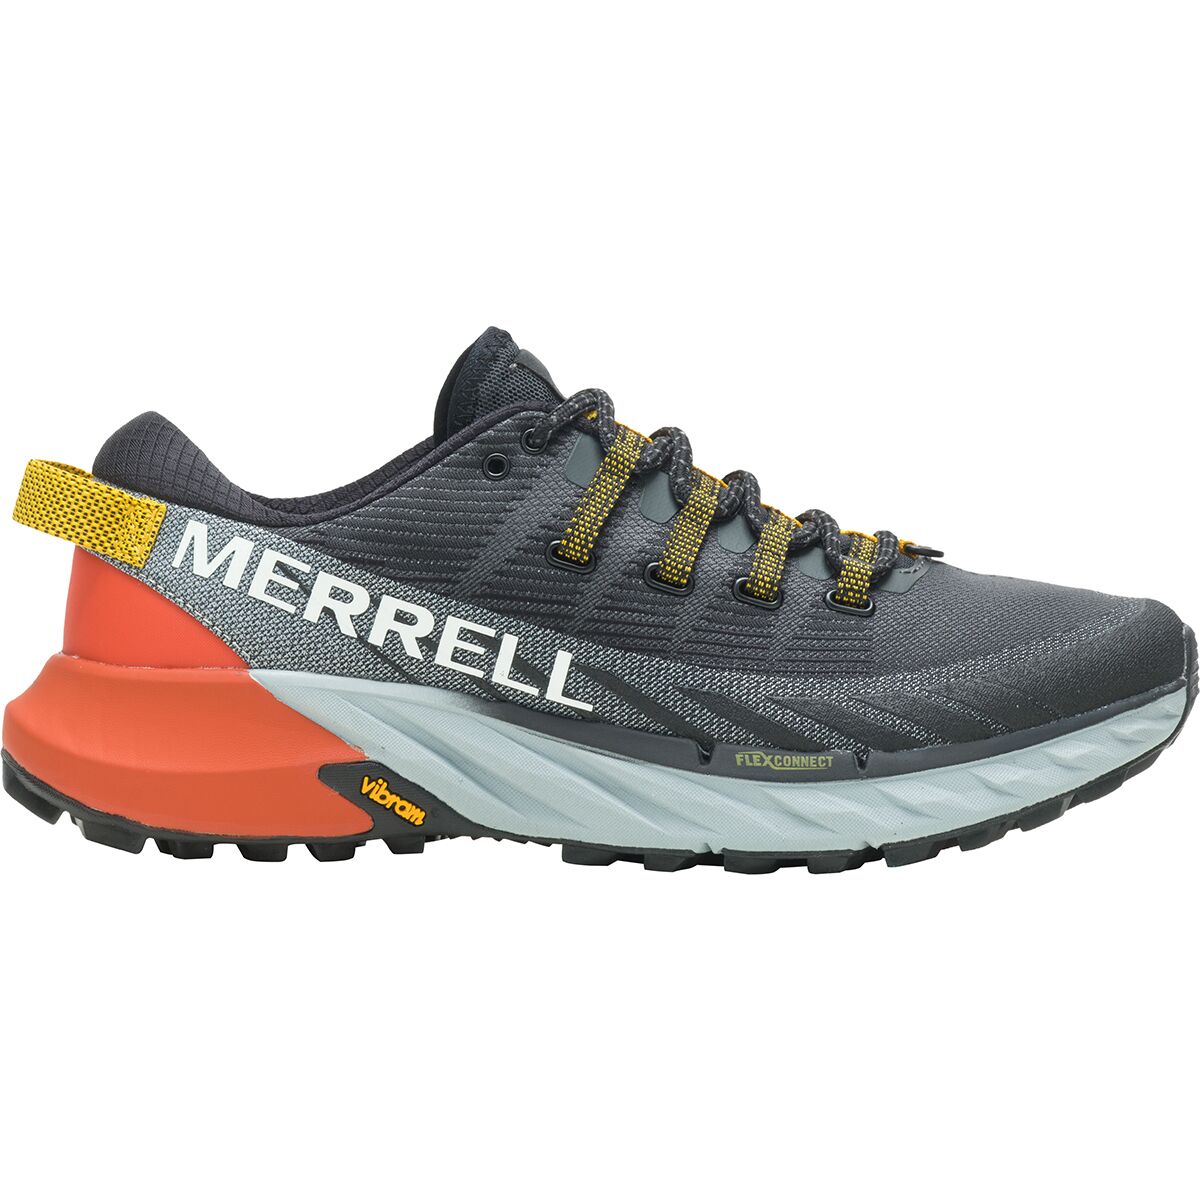 Merrell Agility Peak 4 Trail Running Shoe - Men's - Footwear